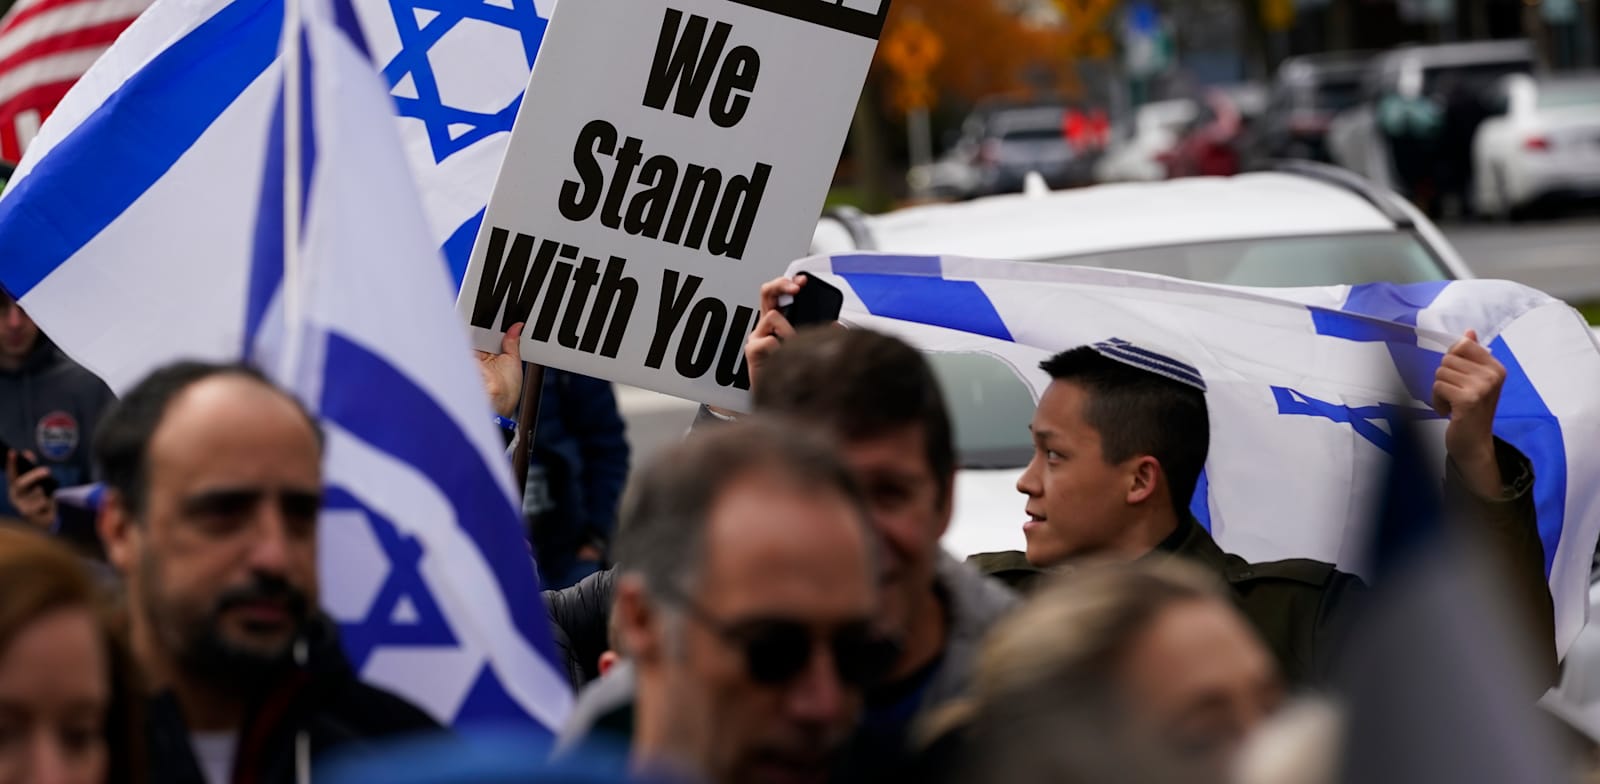 הפגנה פרו ישראלית בוושינגטון, חודש שעבר / צילום: ap, Lindsey Wasson